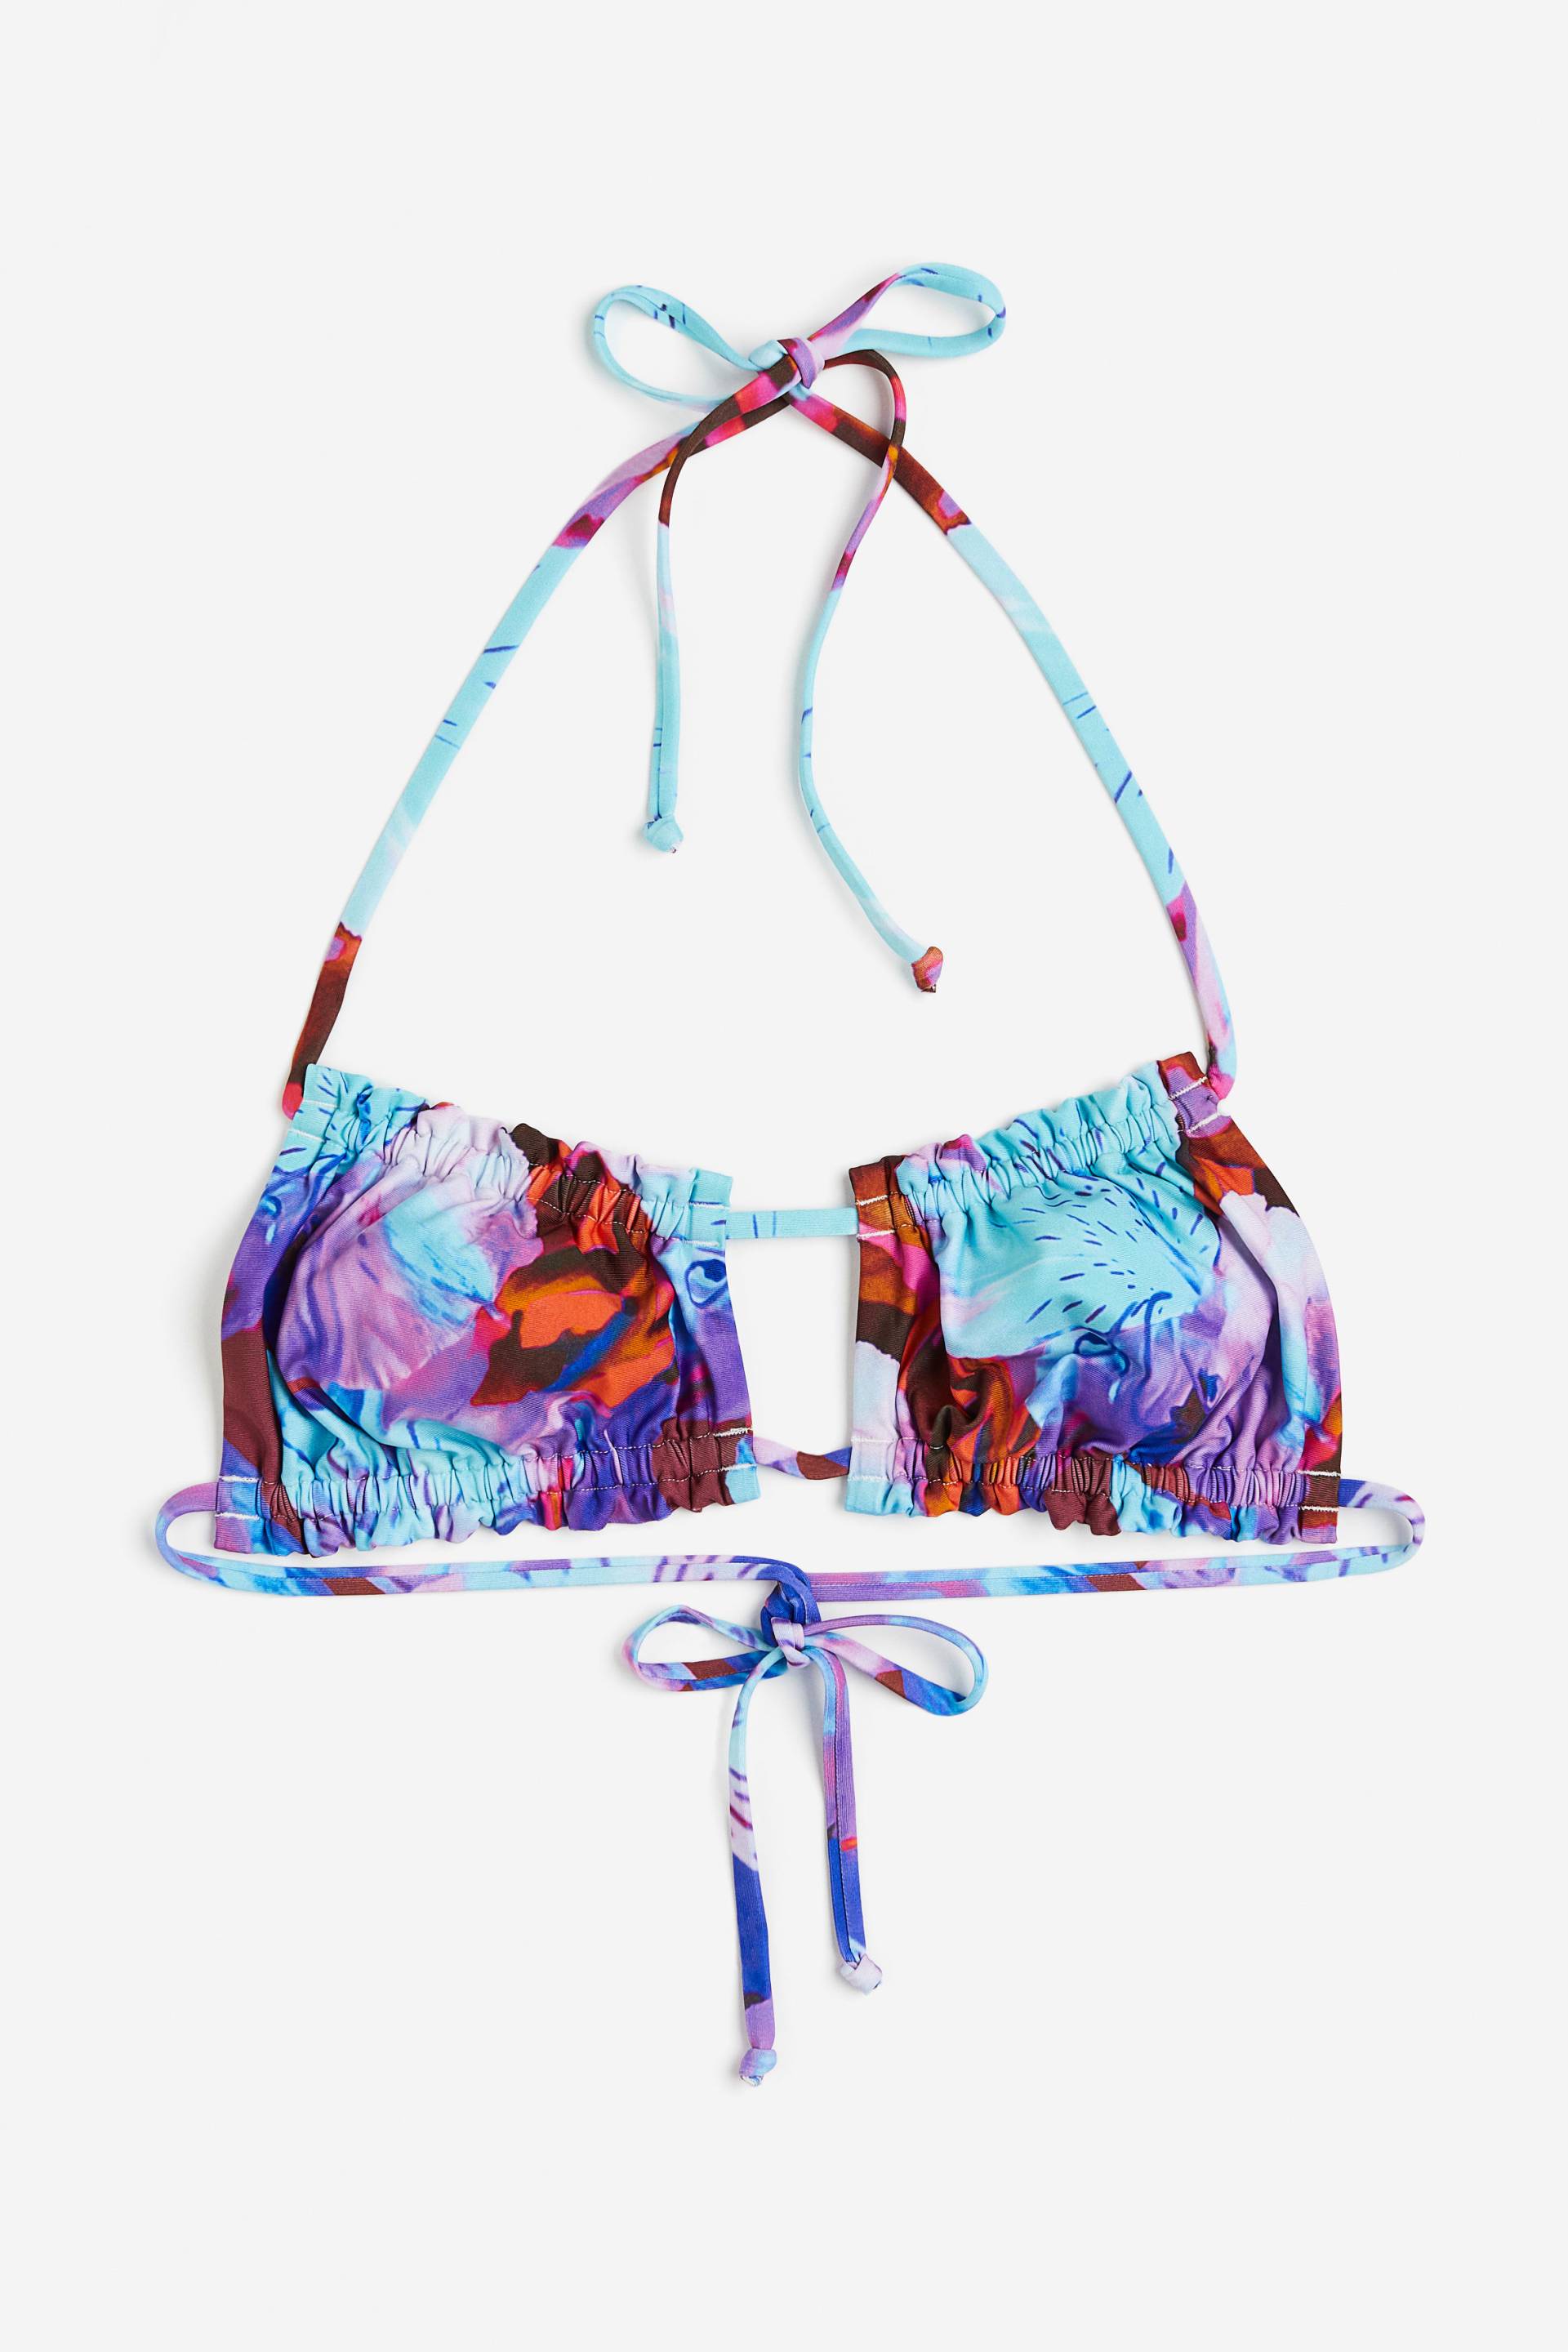 H&M Bikinitop mit Volants Blau/Geblümt, Bikini-Oberteil in Größe 36. Farbe: Blue/floral von H&M